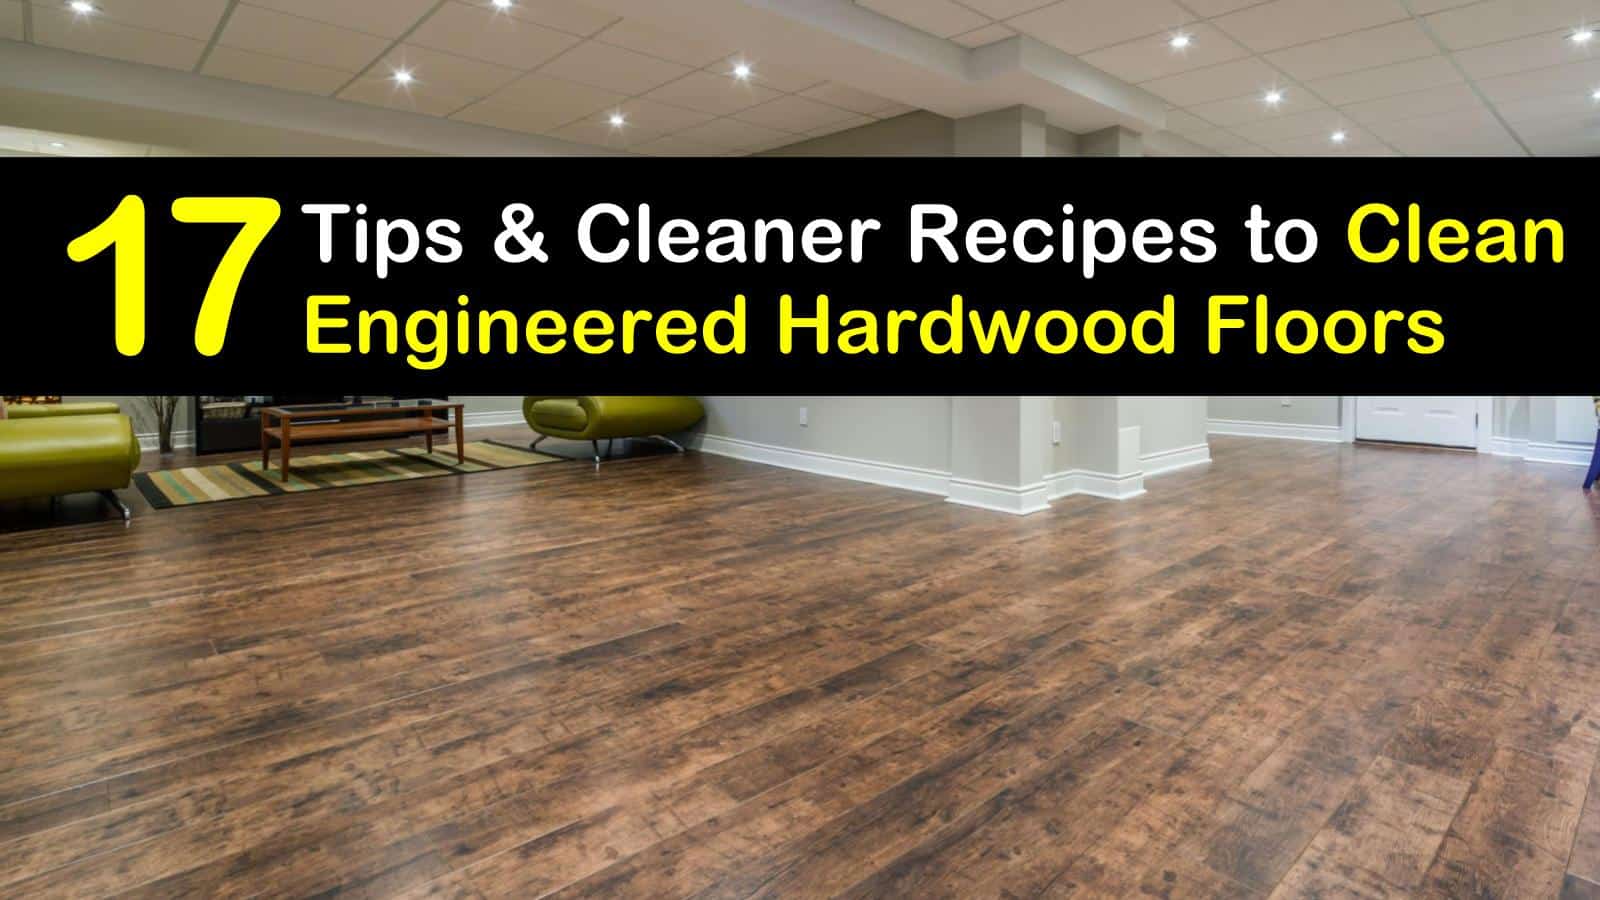 Clean Engineered Hardwood Floors, Best Hardwood Floor Cleaner To Remove Scratches